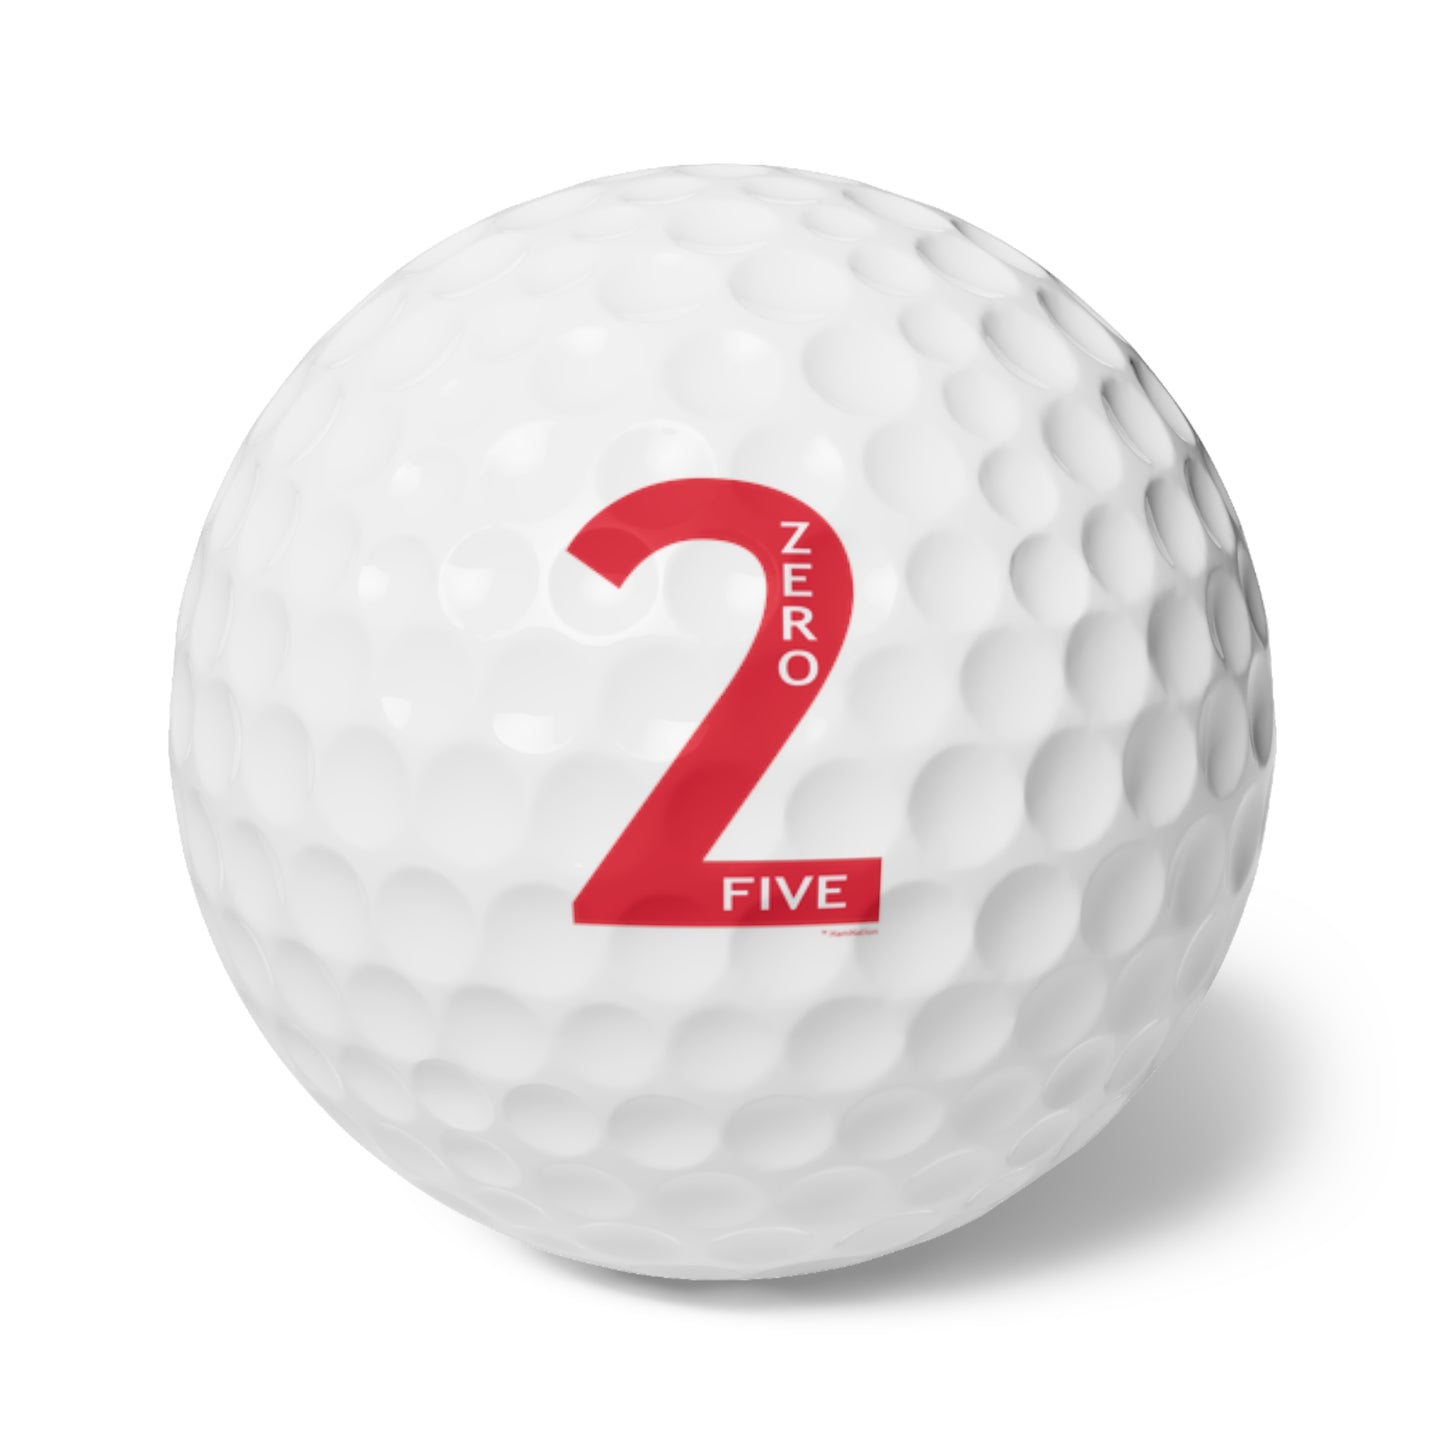 2-0-5 Golf Balls, 6pcs